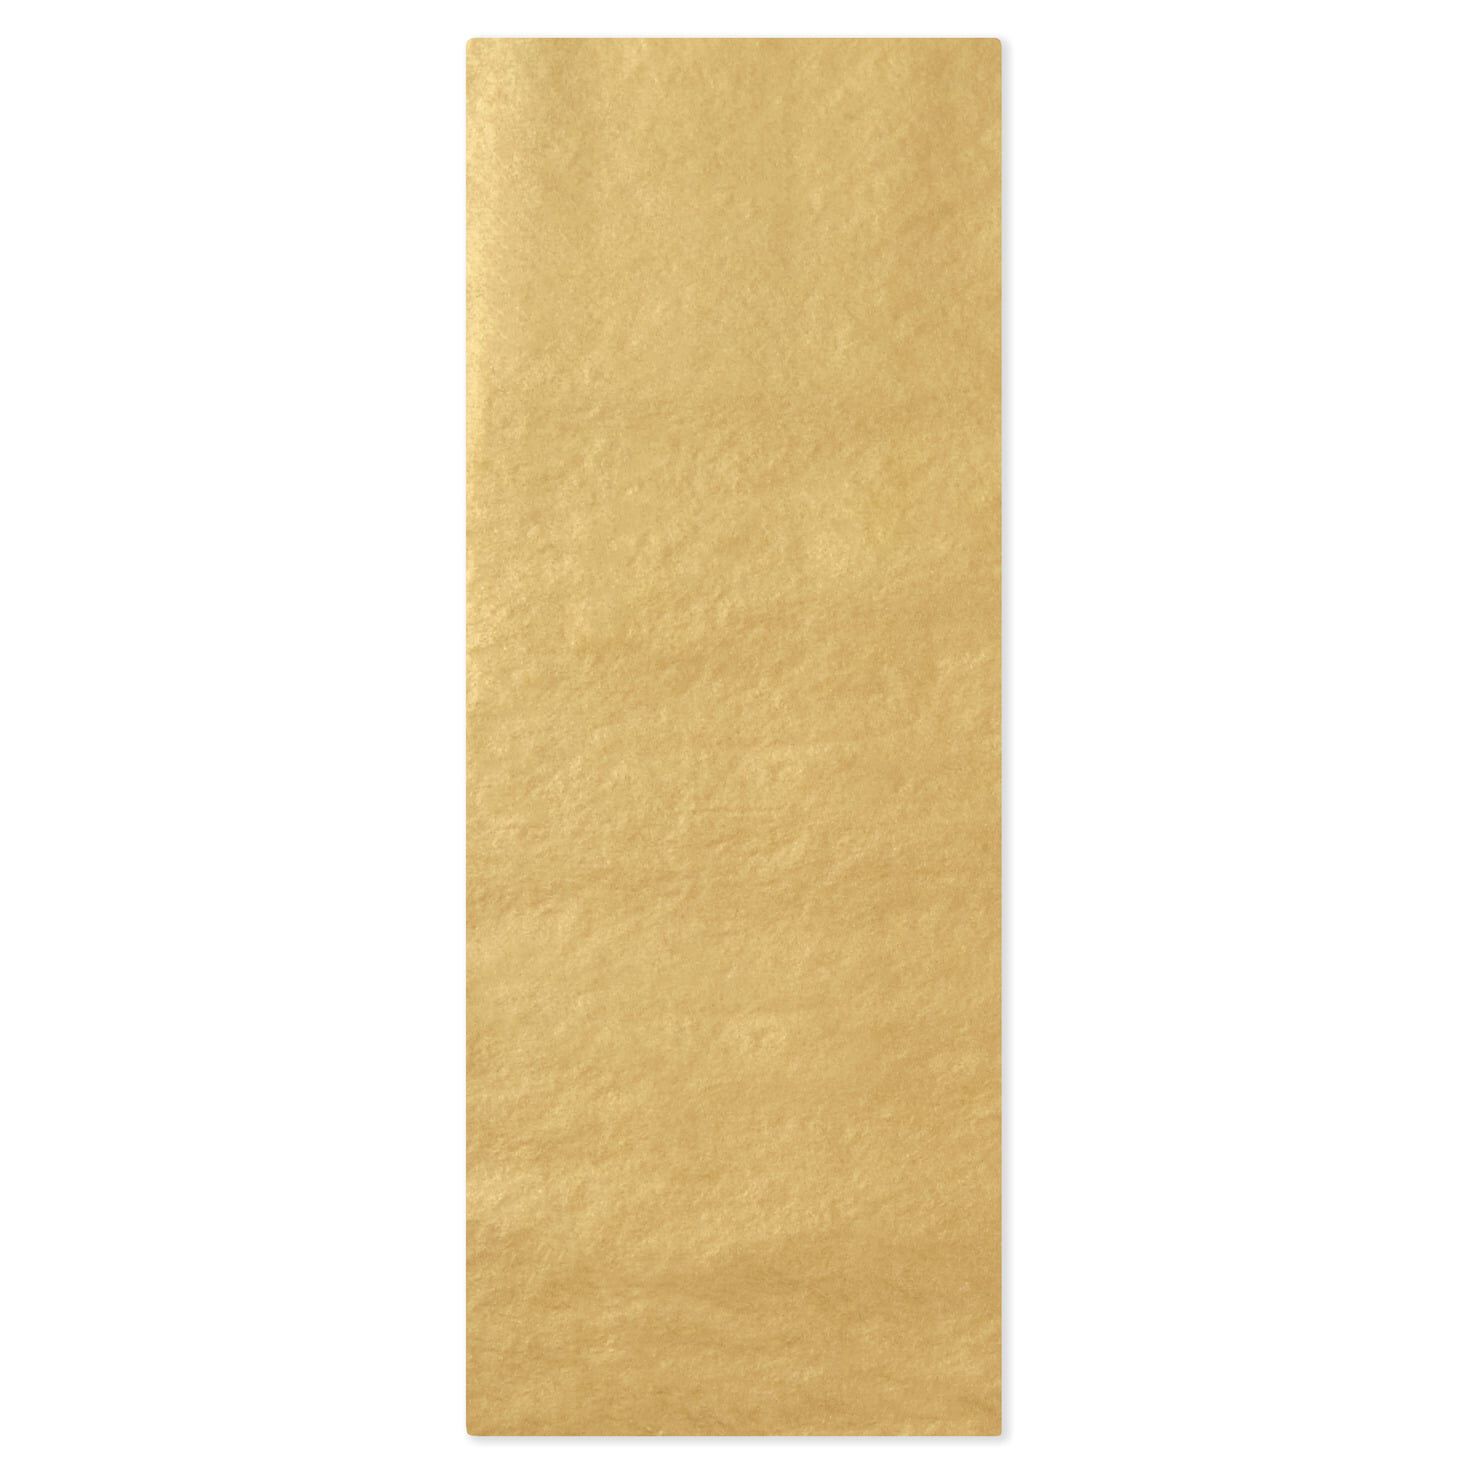 Fancy tissue paper  Fancy, Tissue paper, Tissue